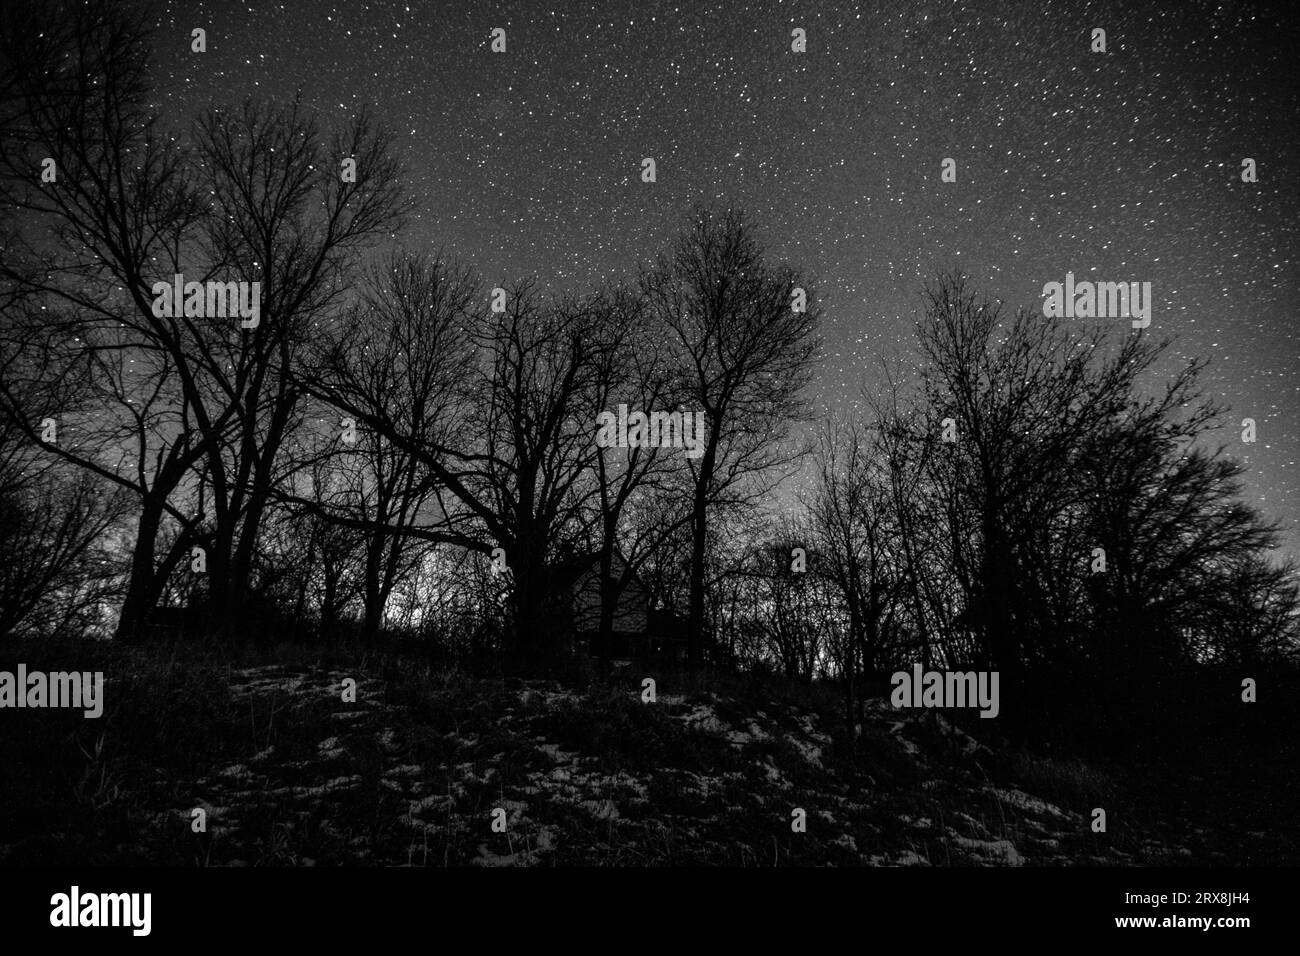 Casa infestata dai fantasmi nascosta in una fossa di alberi sotto un cielo pieno di stelle, resa in bianco e nero scintillante. Foto Stock